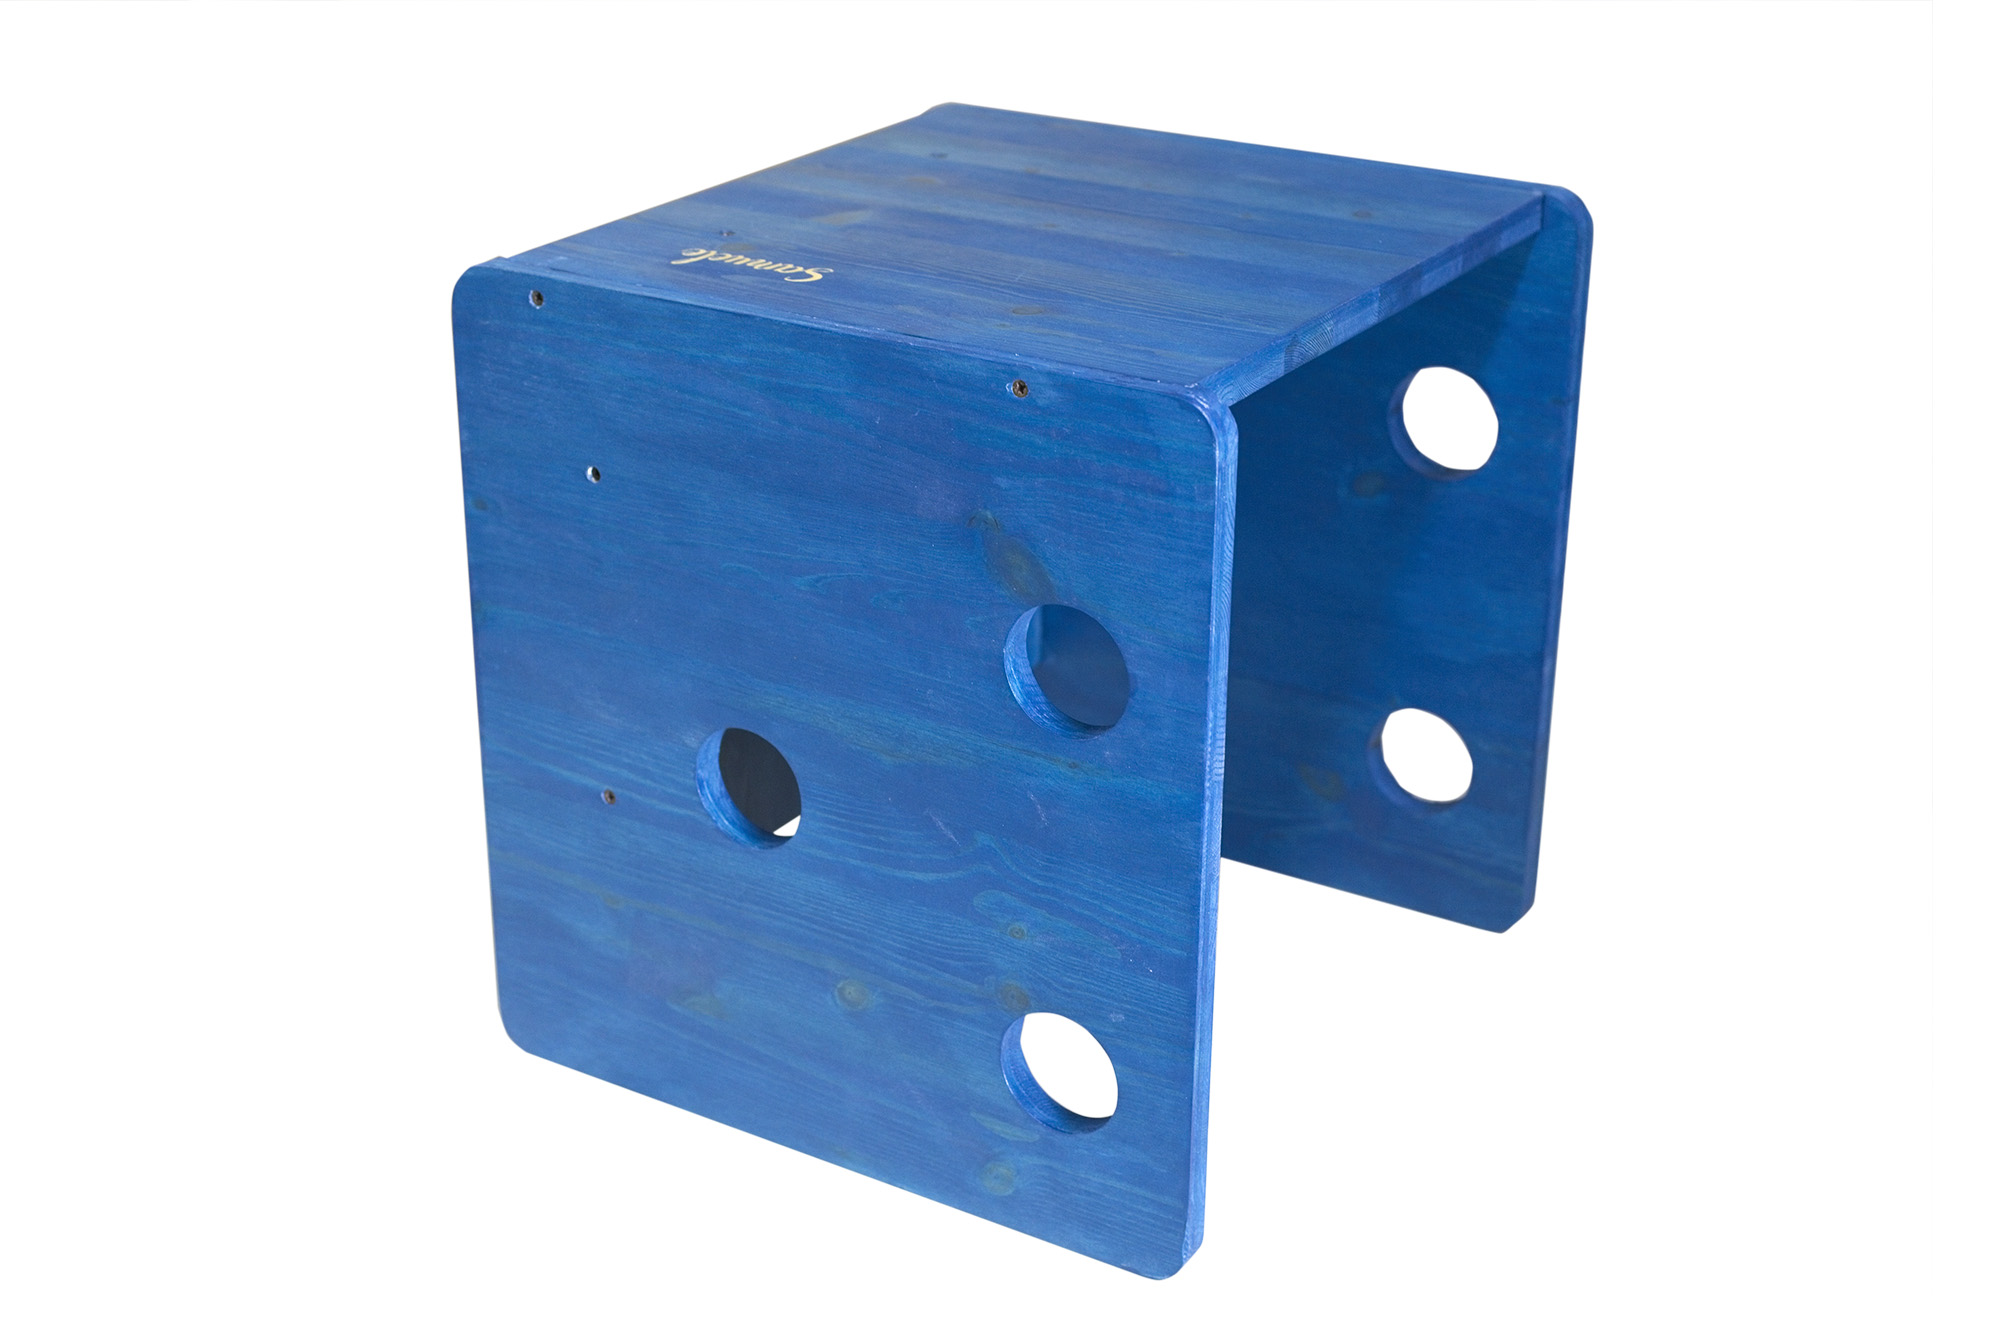 Sedia e Tavolo Cubo colore blu